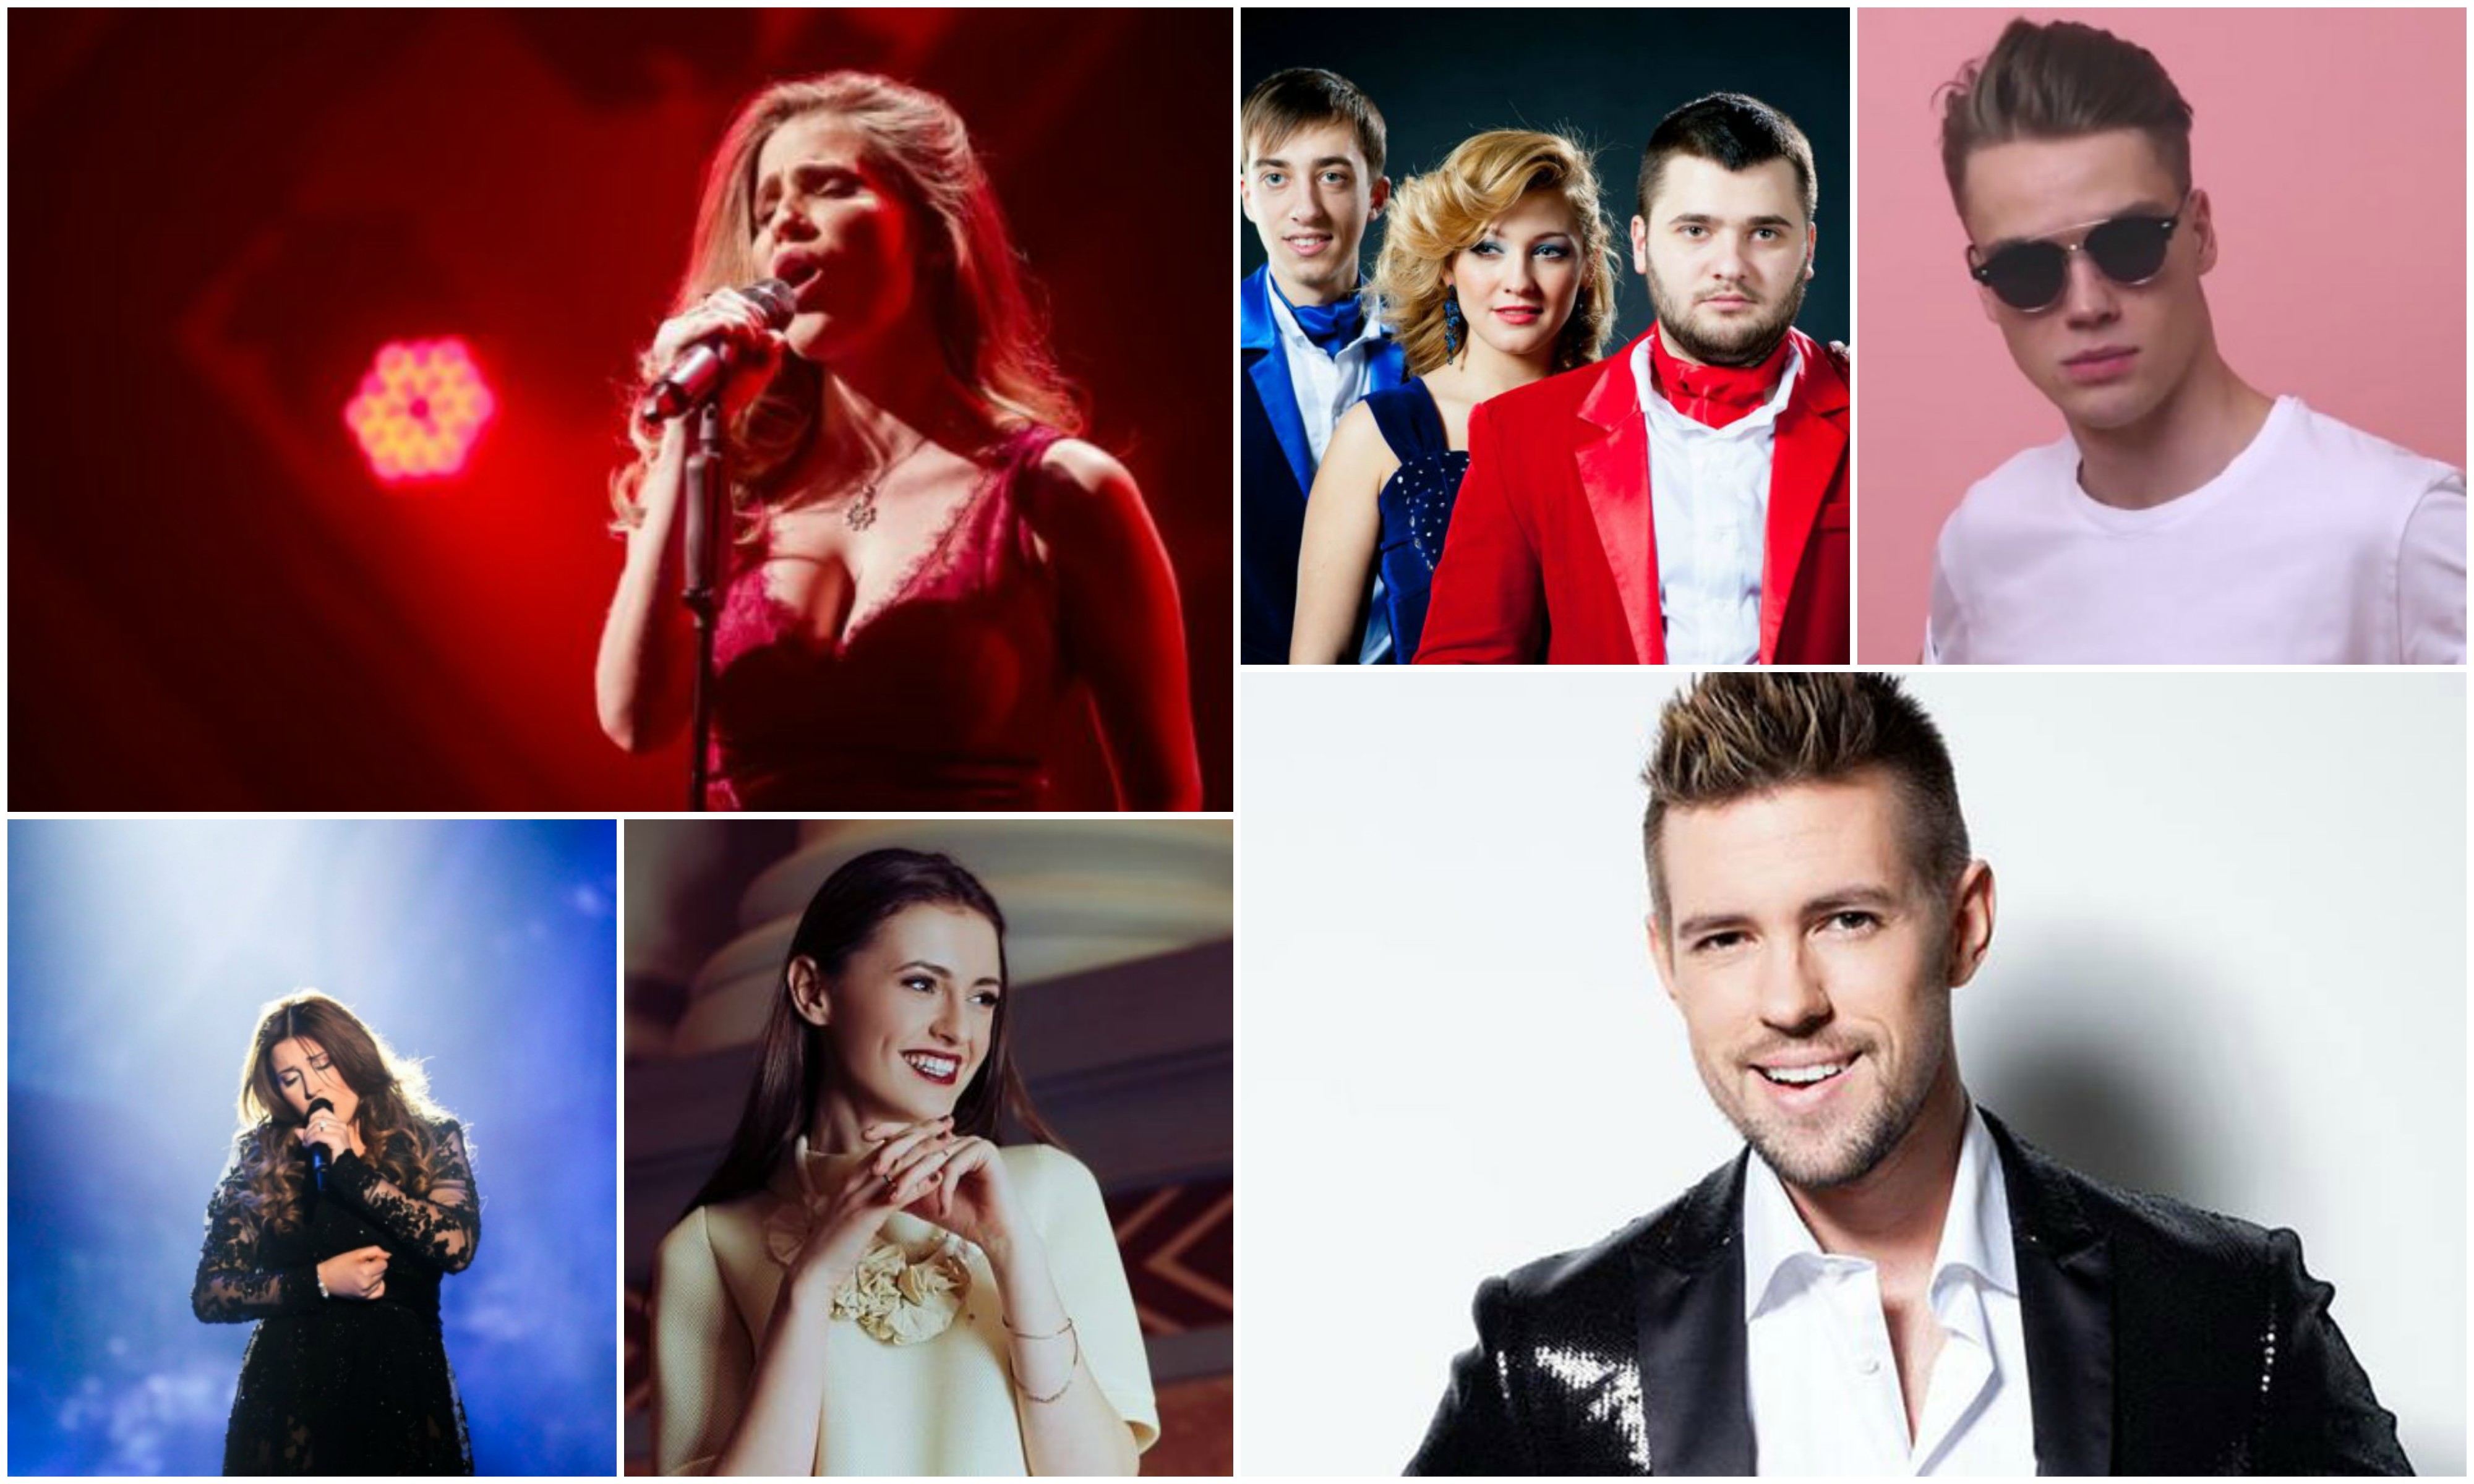 Απόψε το Eurovision Pre-Party στη Ρίγα! Ποιοι καλλιτέχνες θα είναι εκεί;